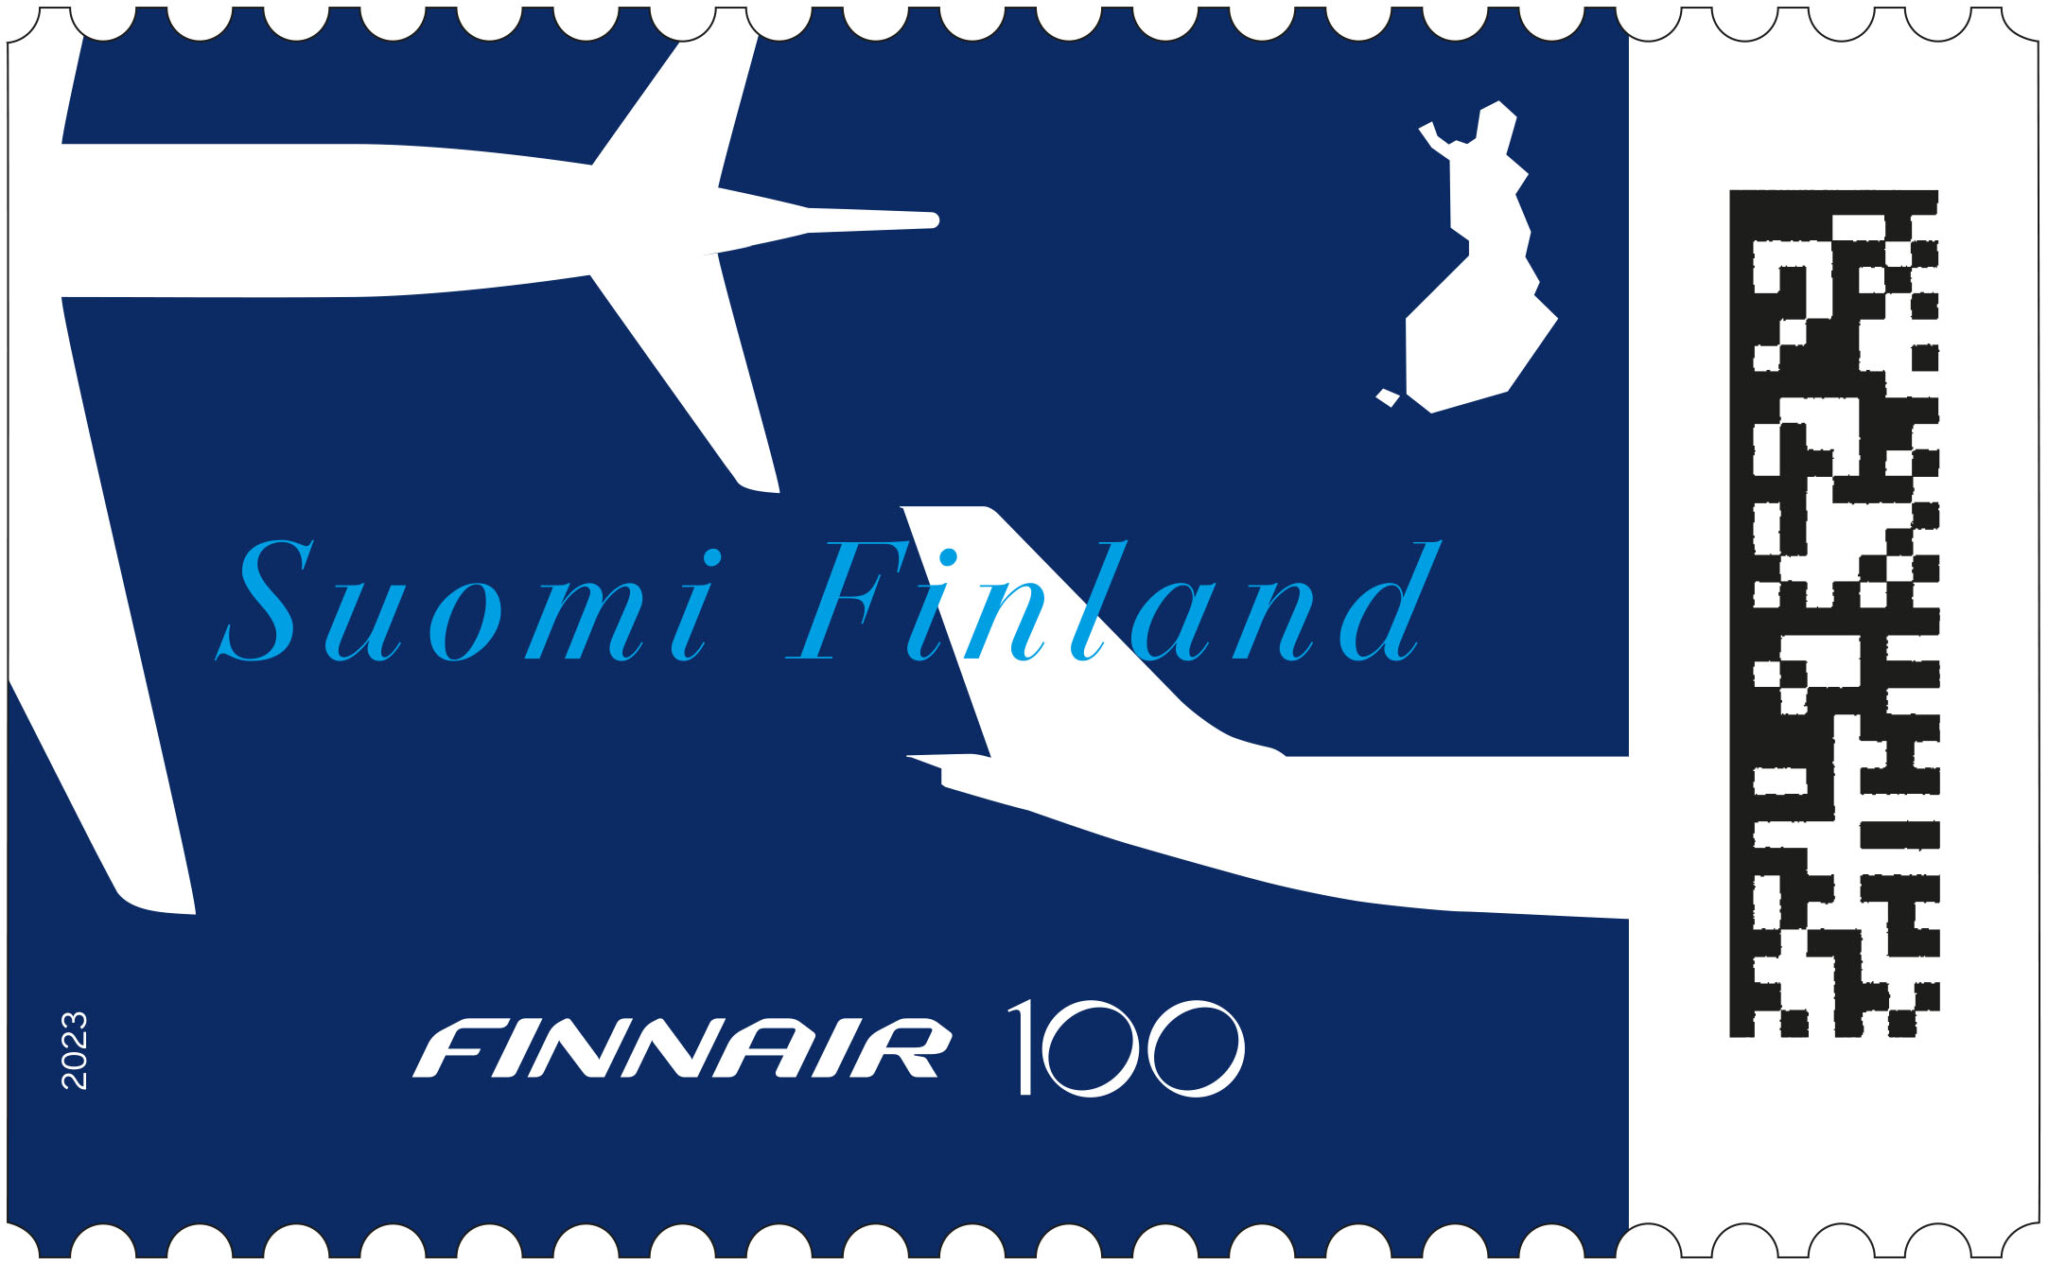 Poštovní známka vydaná k historickému výročí